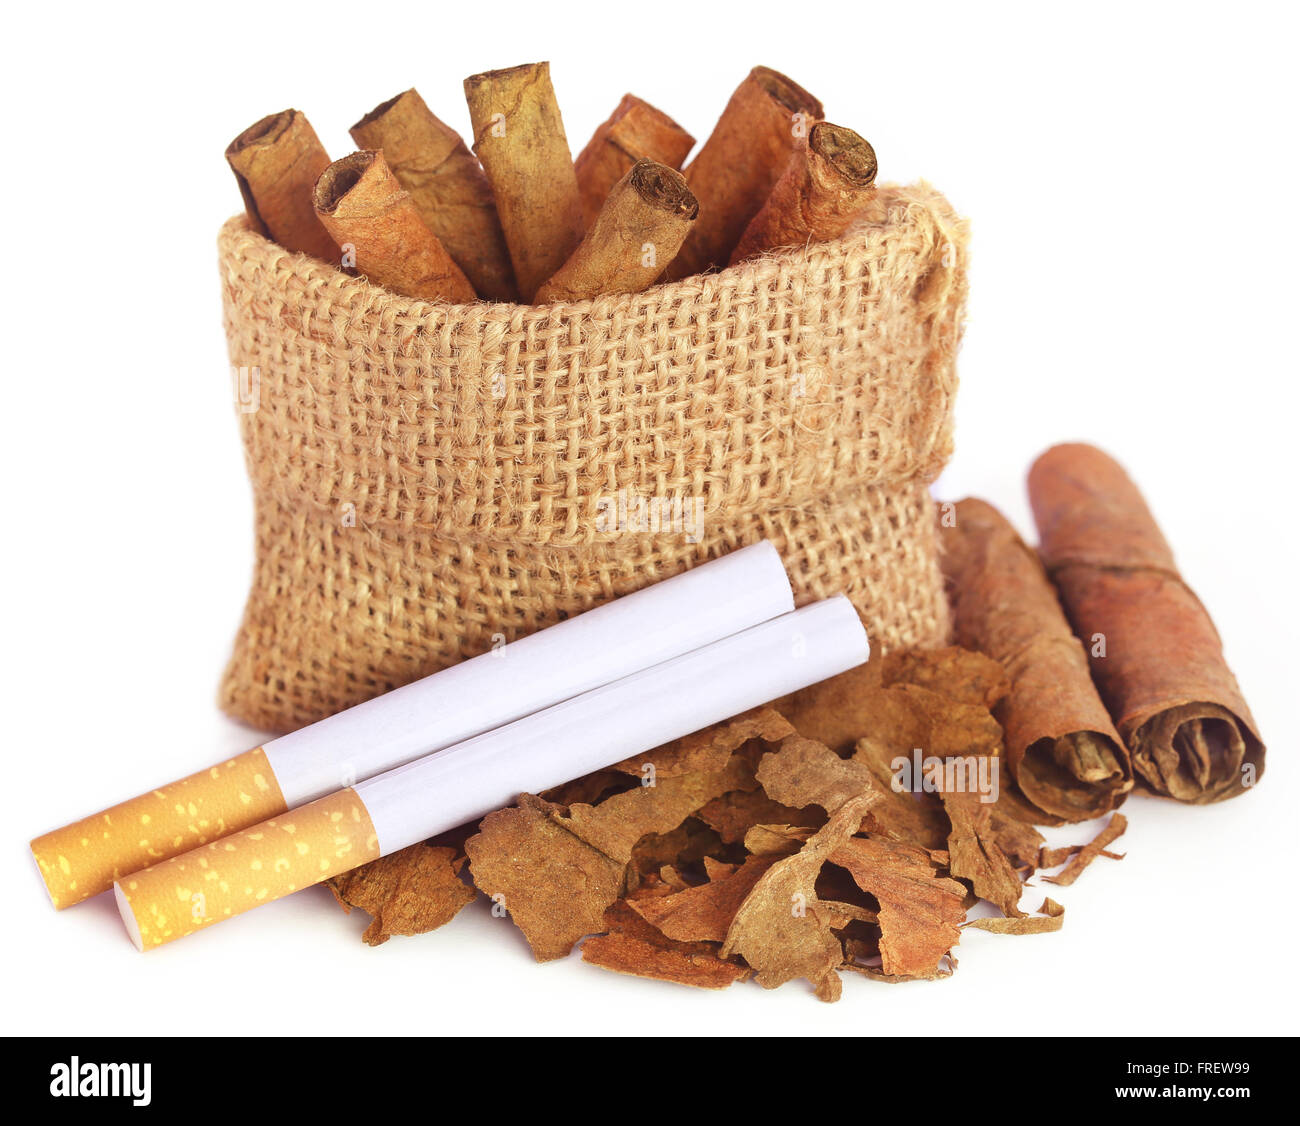 Trockene Tabakblätter mit Filter Zigarette auf weißem Hintergrund Stockfoto